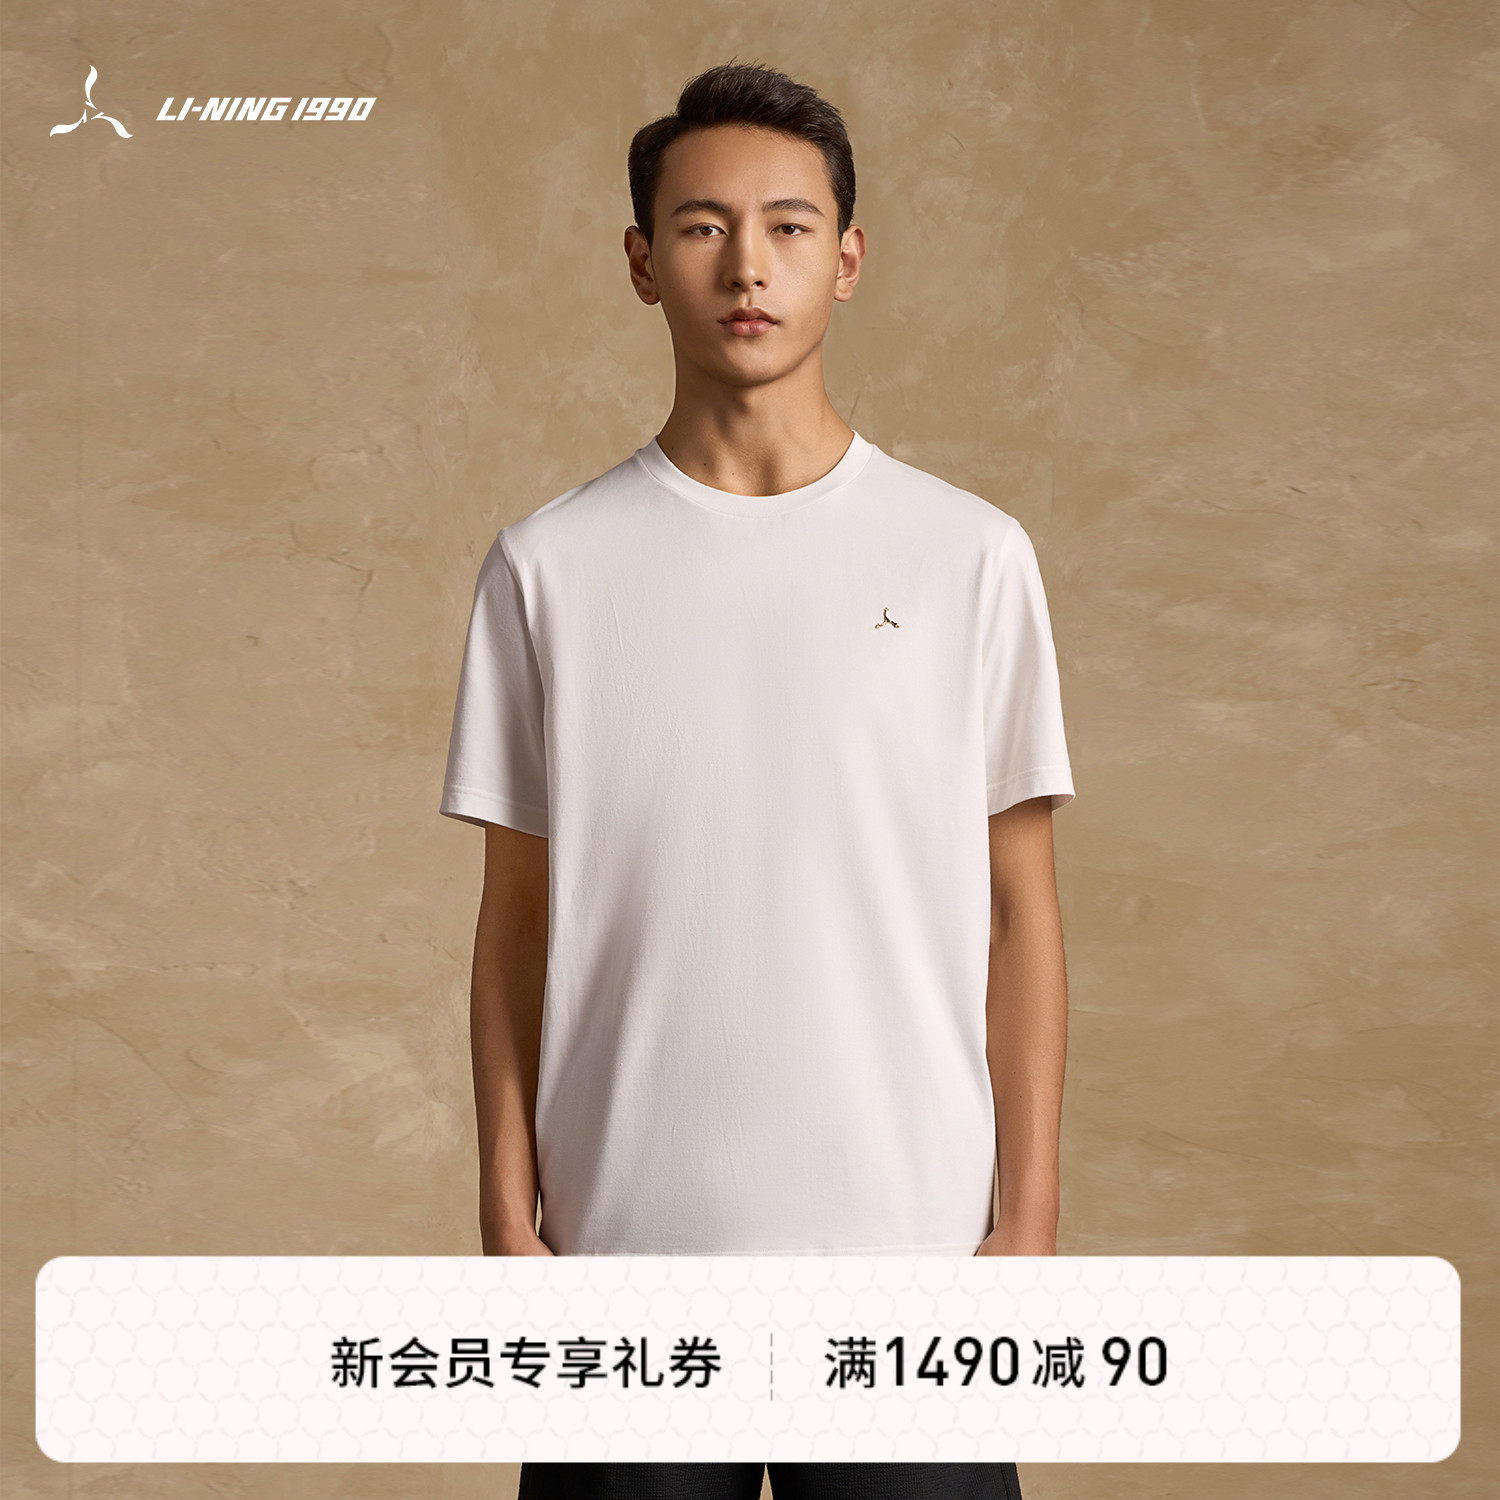 【夏季新品】LI-NING1990 男士运动正肩短袖T恤 李宁1990经典系列